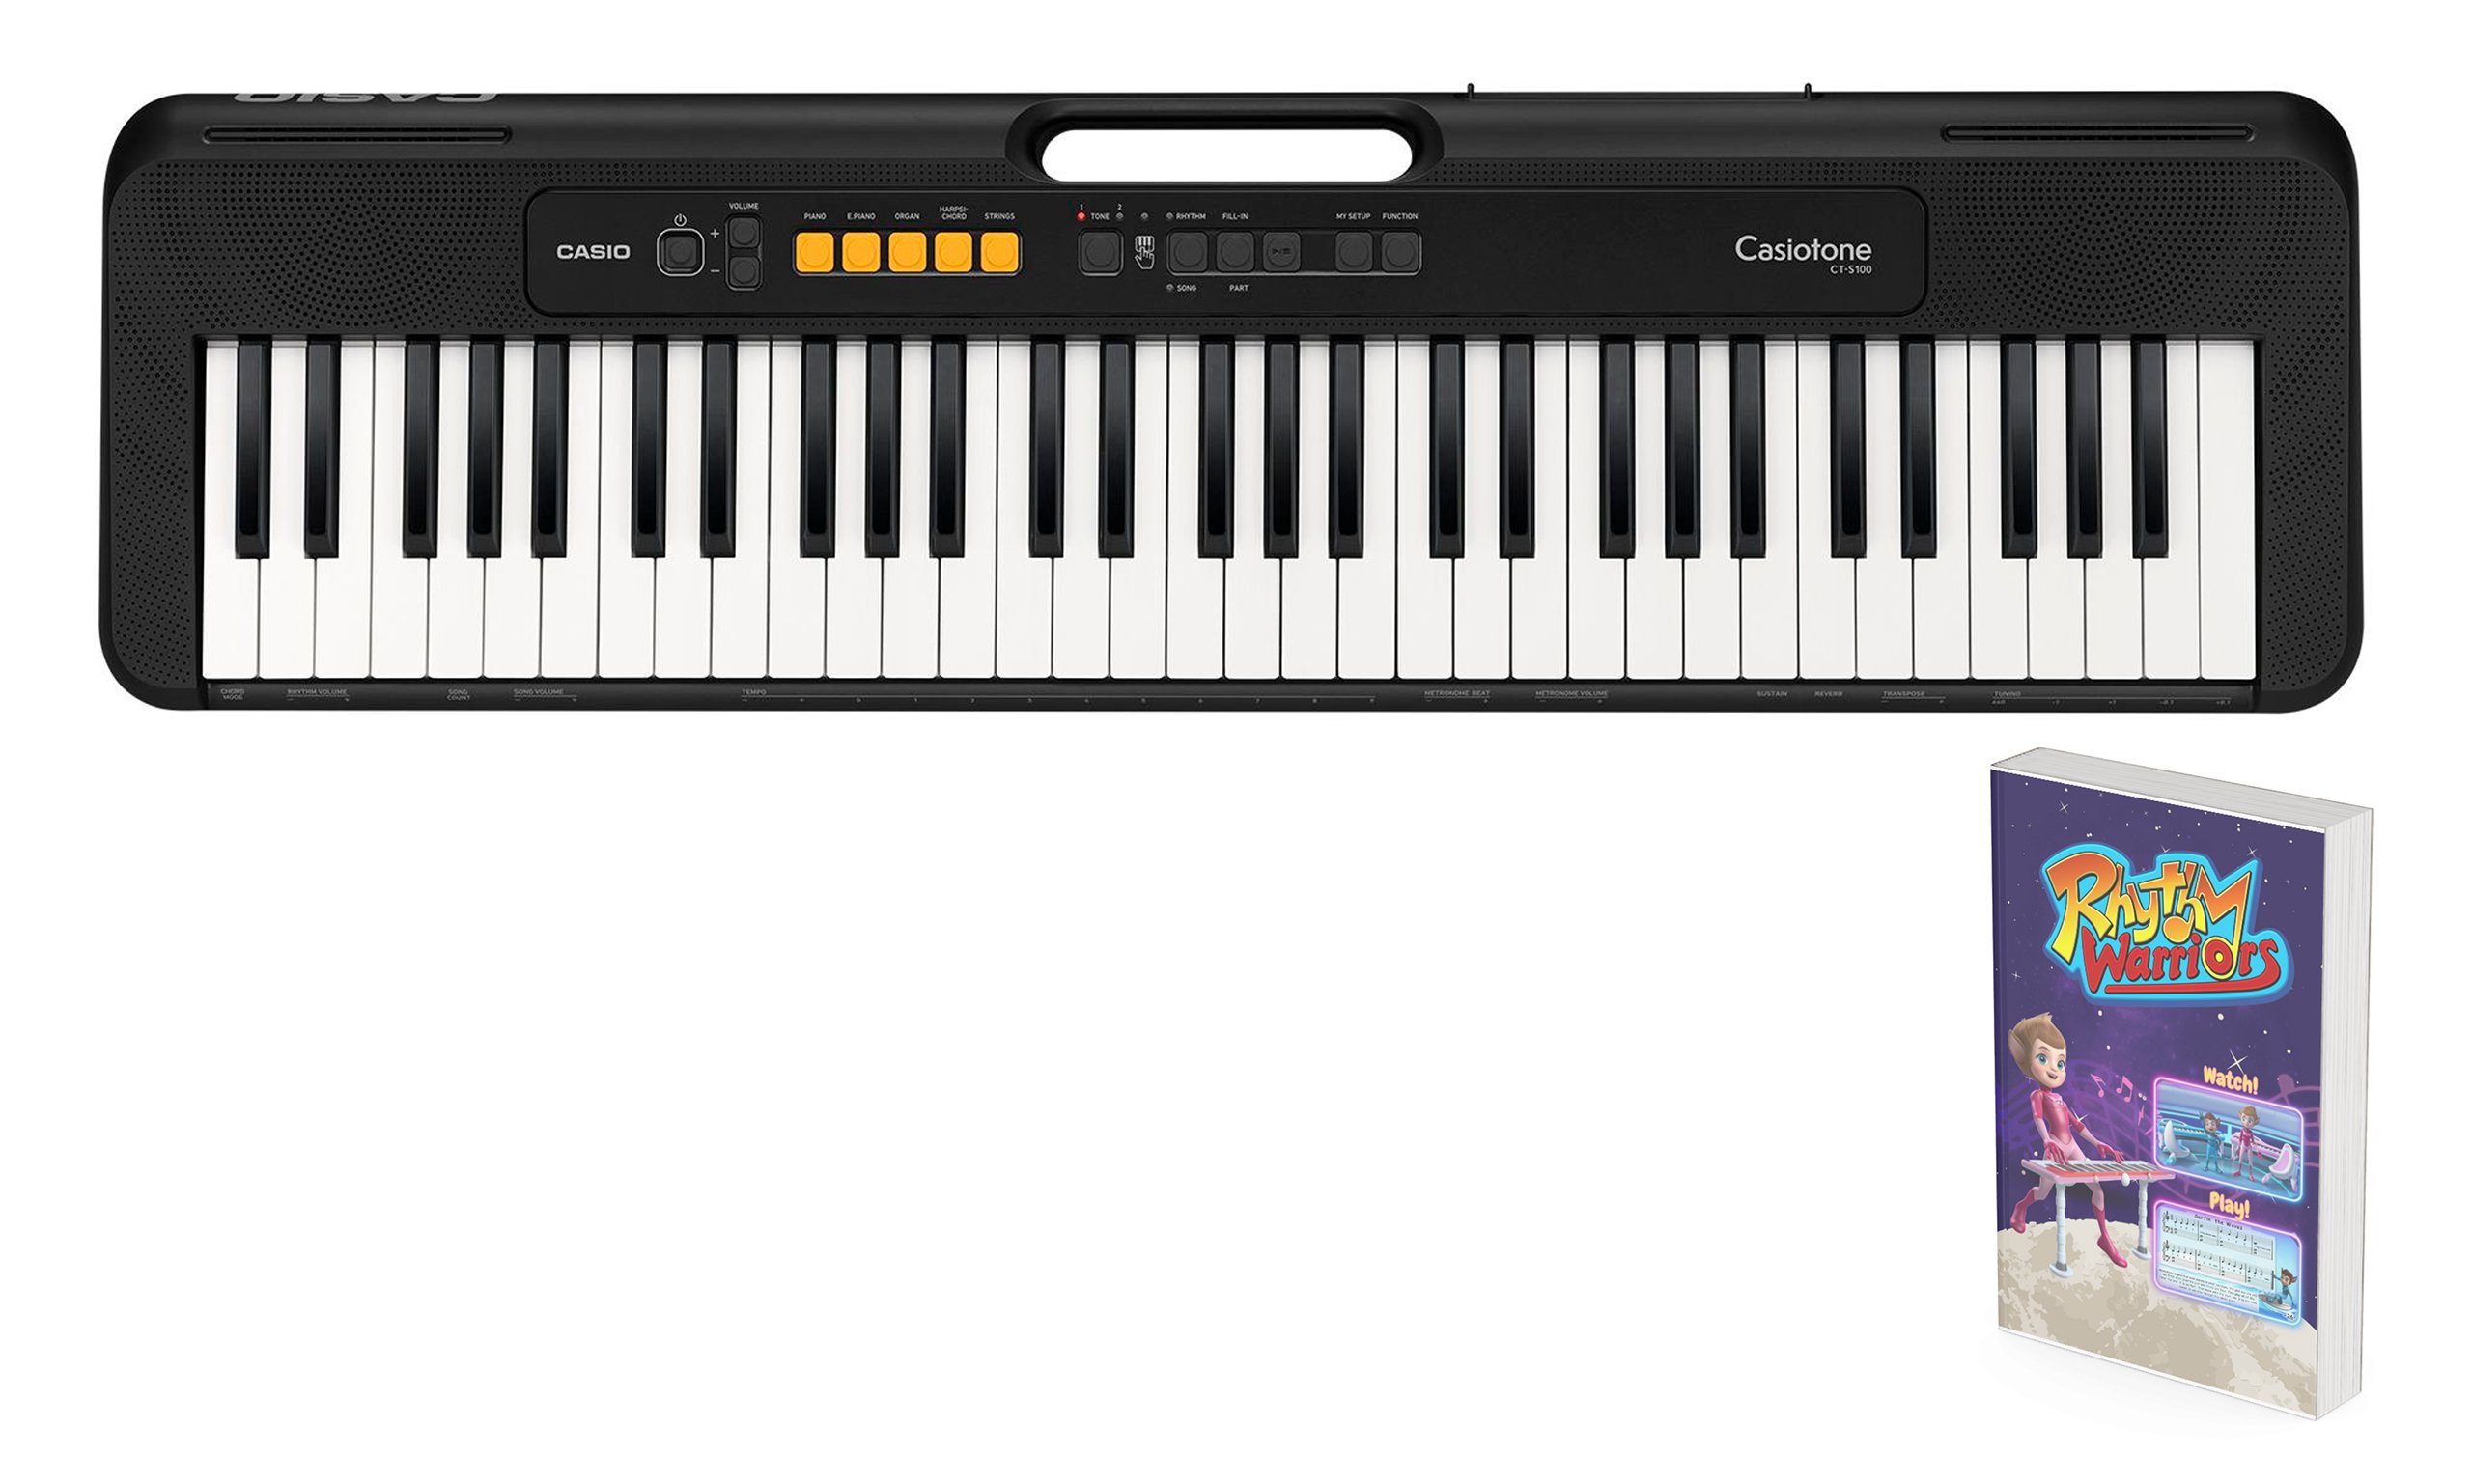 Casio Beginners Keyboard & Rhythm Warriors Lessons Bundle